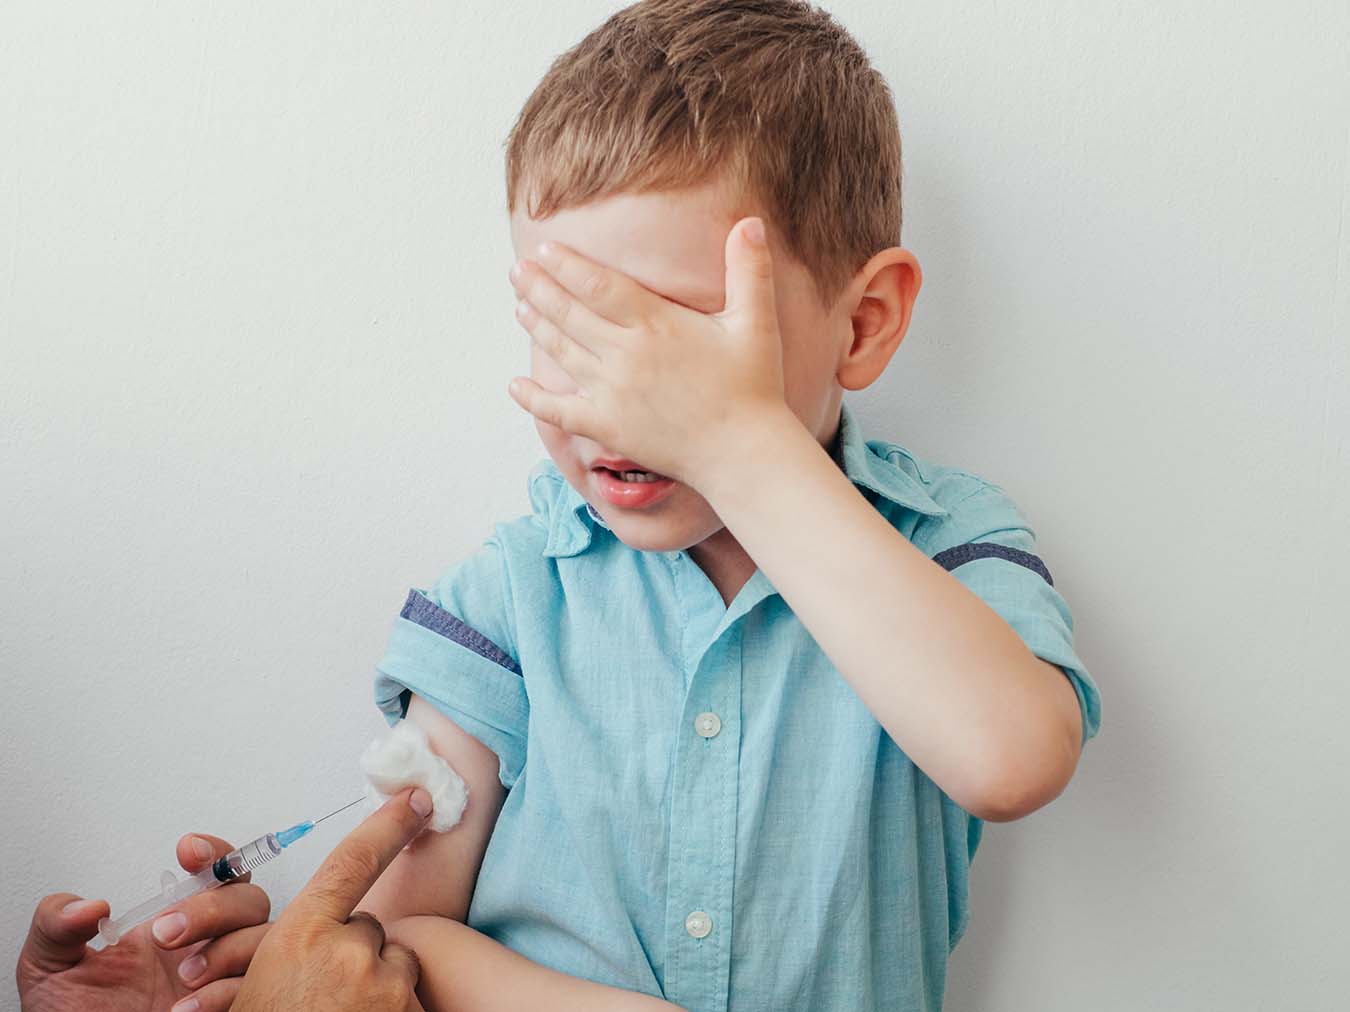 szczepienie dzieci co trzeba koniecznie wiedziec